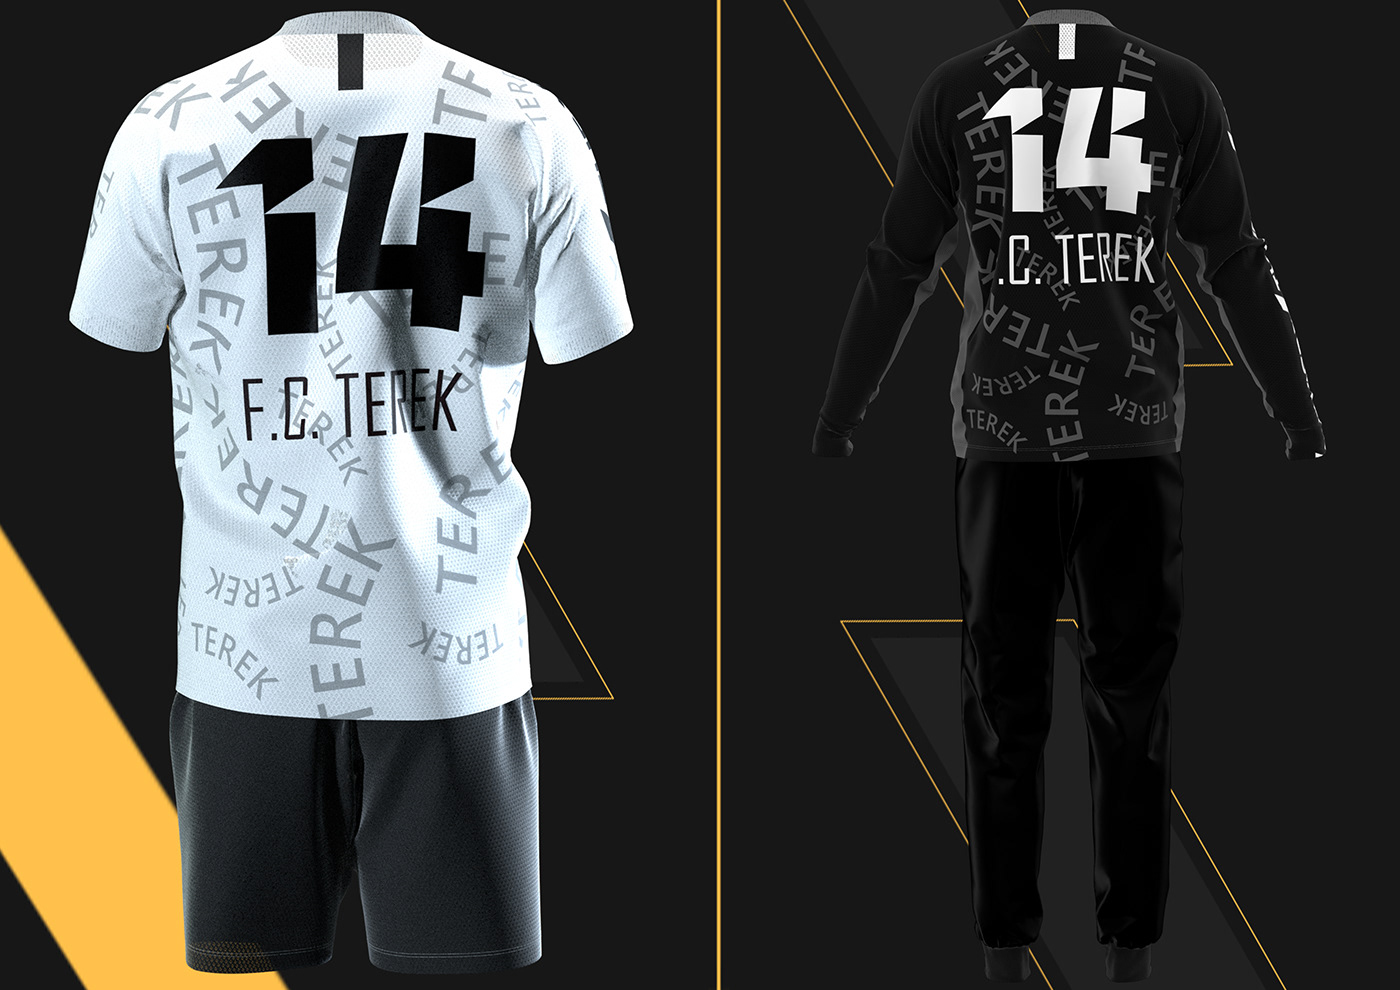 Clo3d Clothing fashion design football sportwear